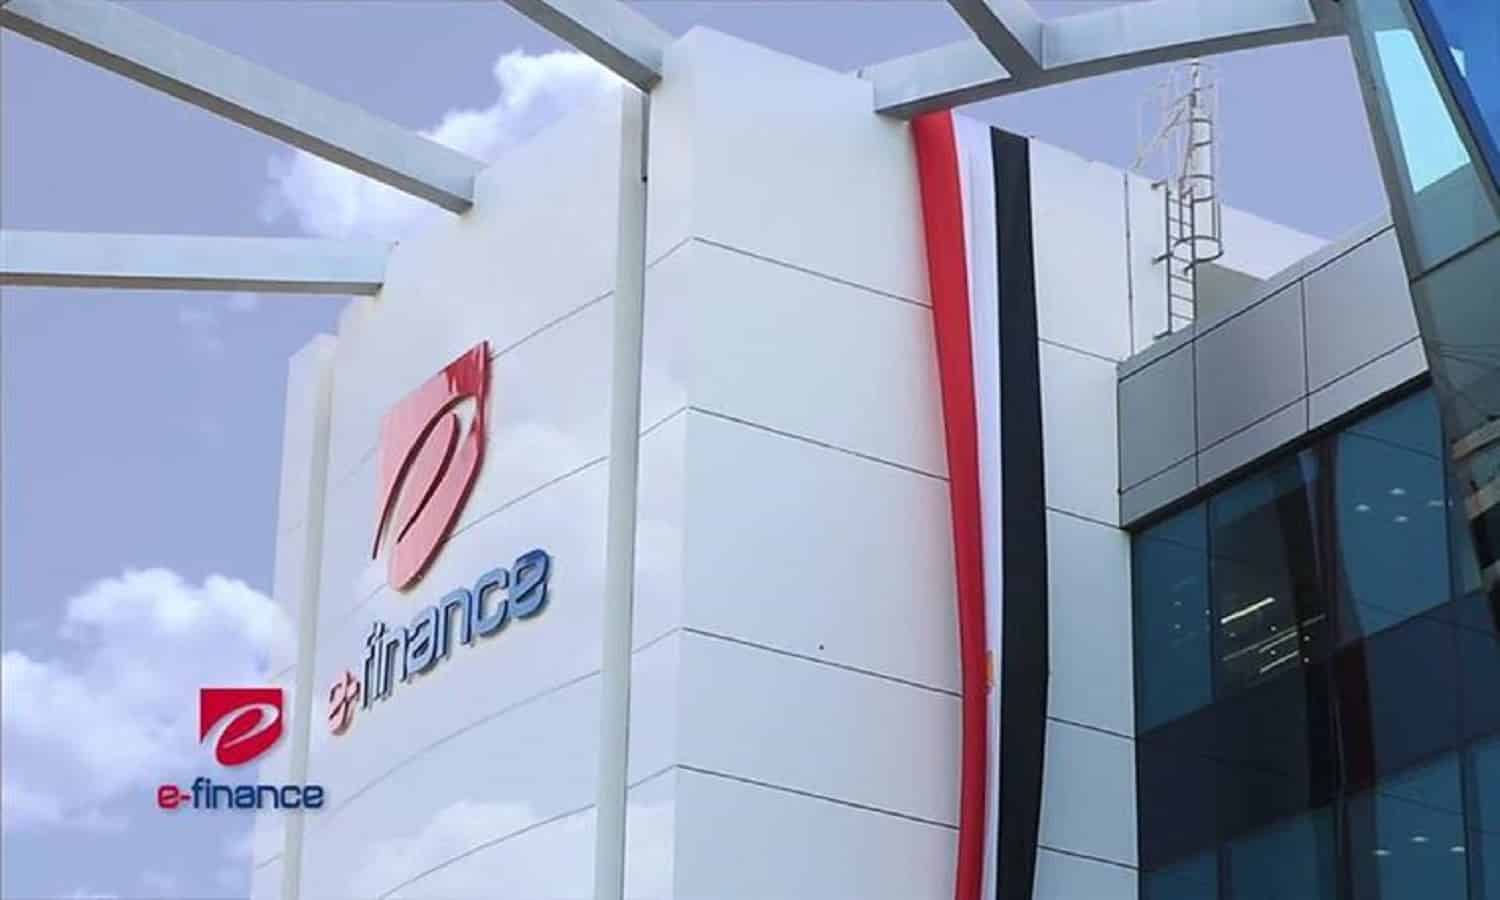 تابعة لـ إي فاينانس توقع إطلاق تطبيق نكستا مع بنك مصر وفيزا
